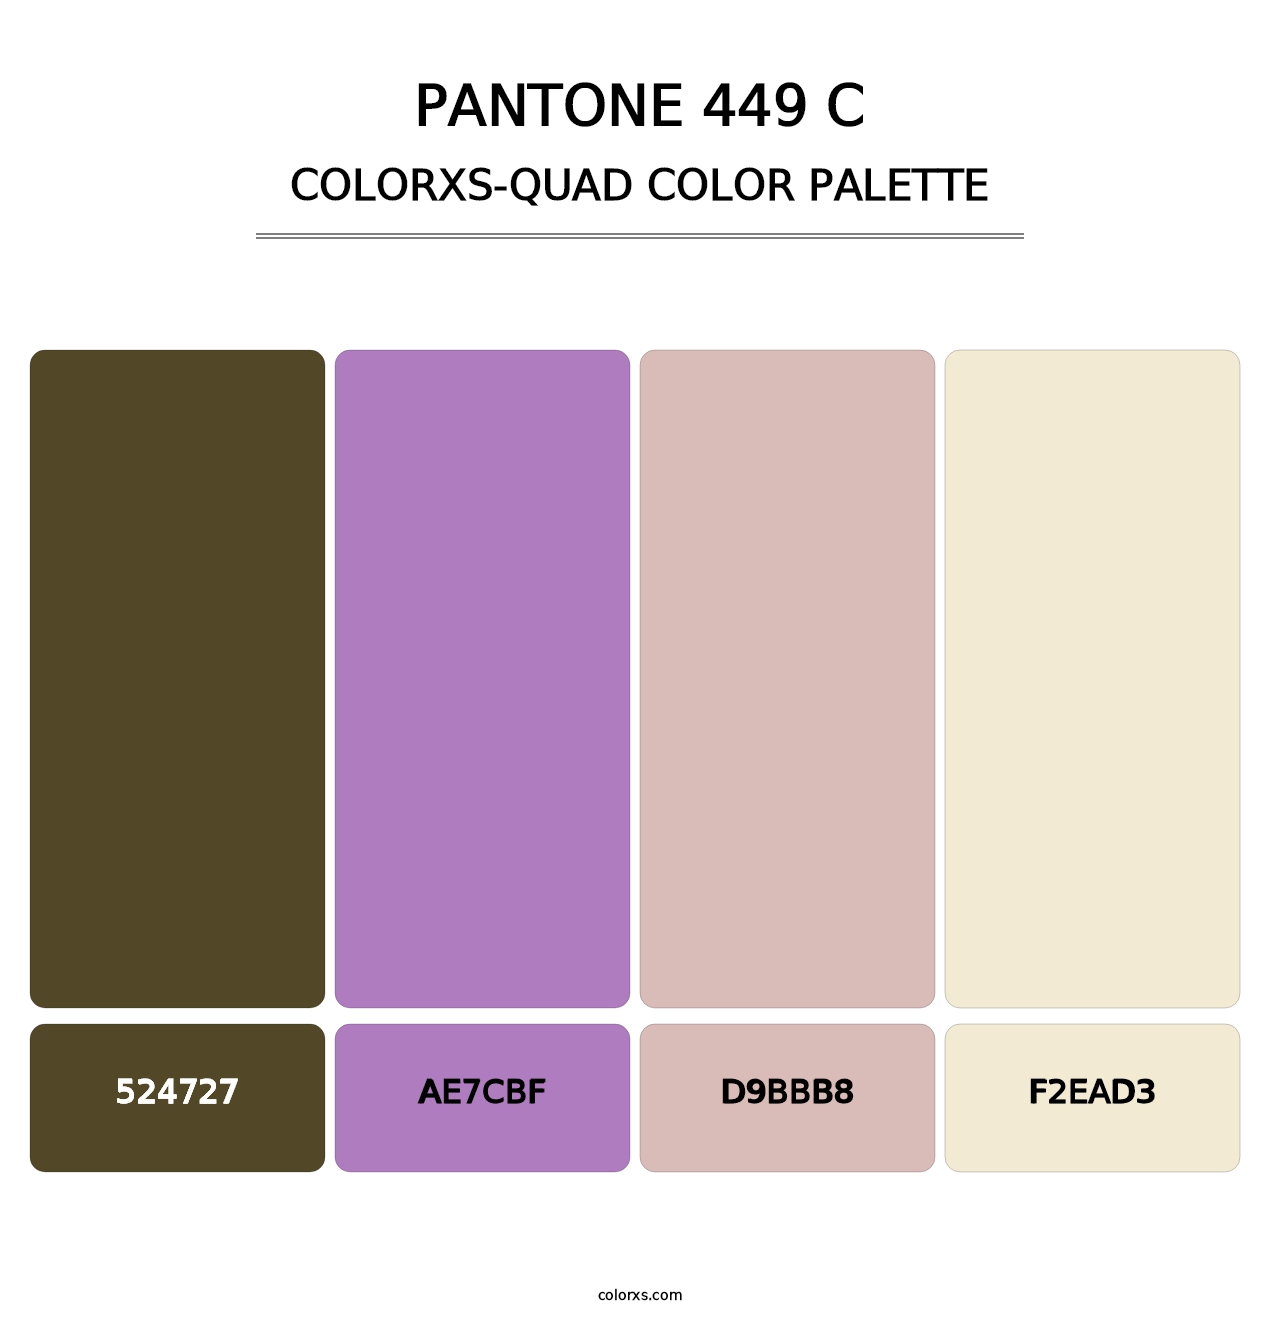 PANTONE 449 C - Colorxs Quad Palette